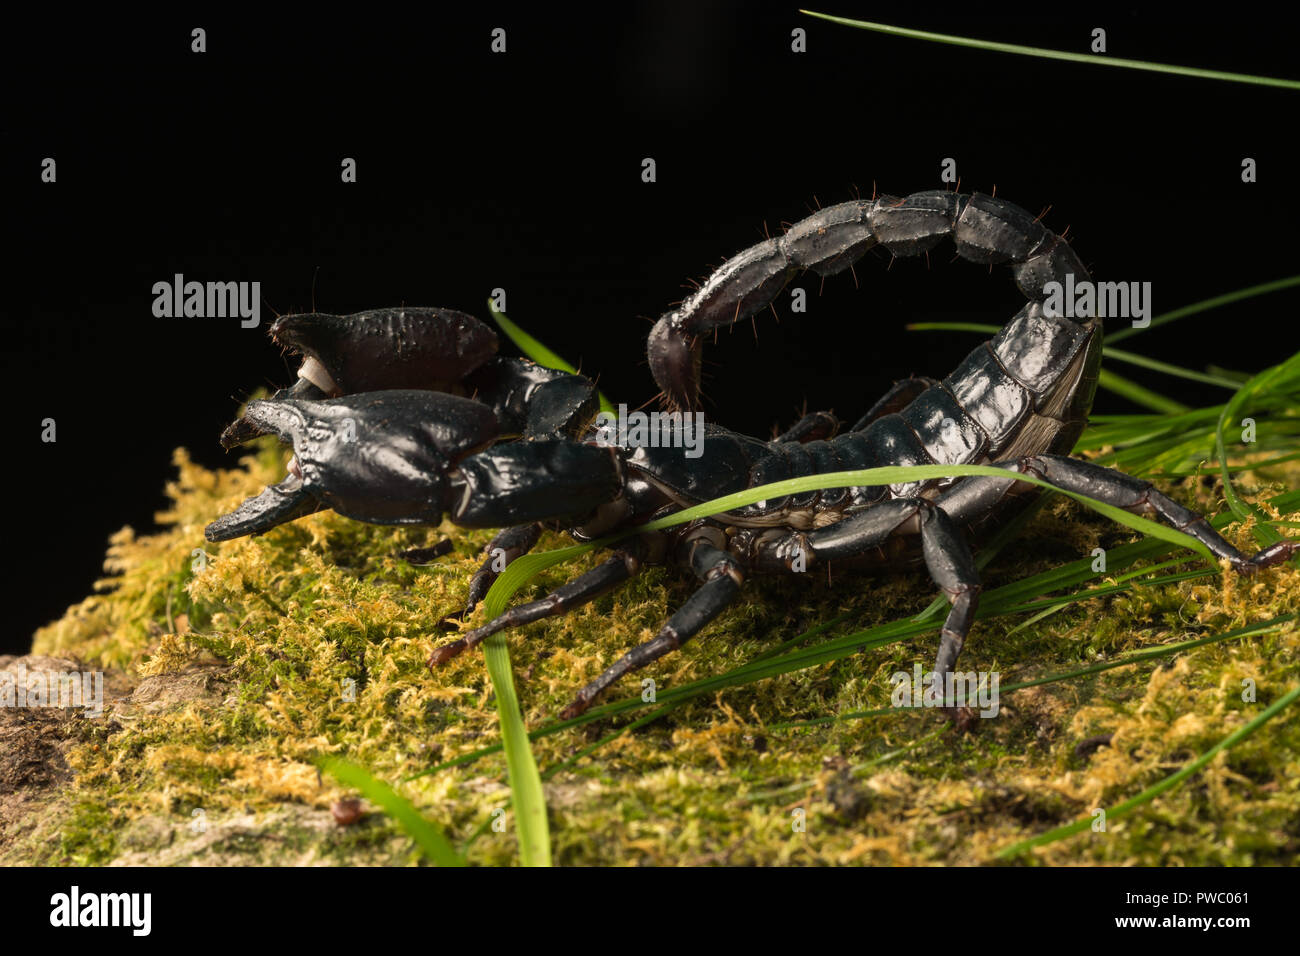 Scorpion Pandinus imperator (empereur), une espèce de scorpion originaire de forêts humides et les savanes de l'Afrique de l'Ouest Banque D'Images